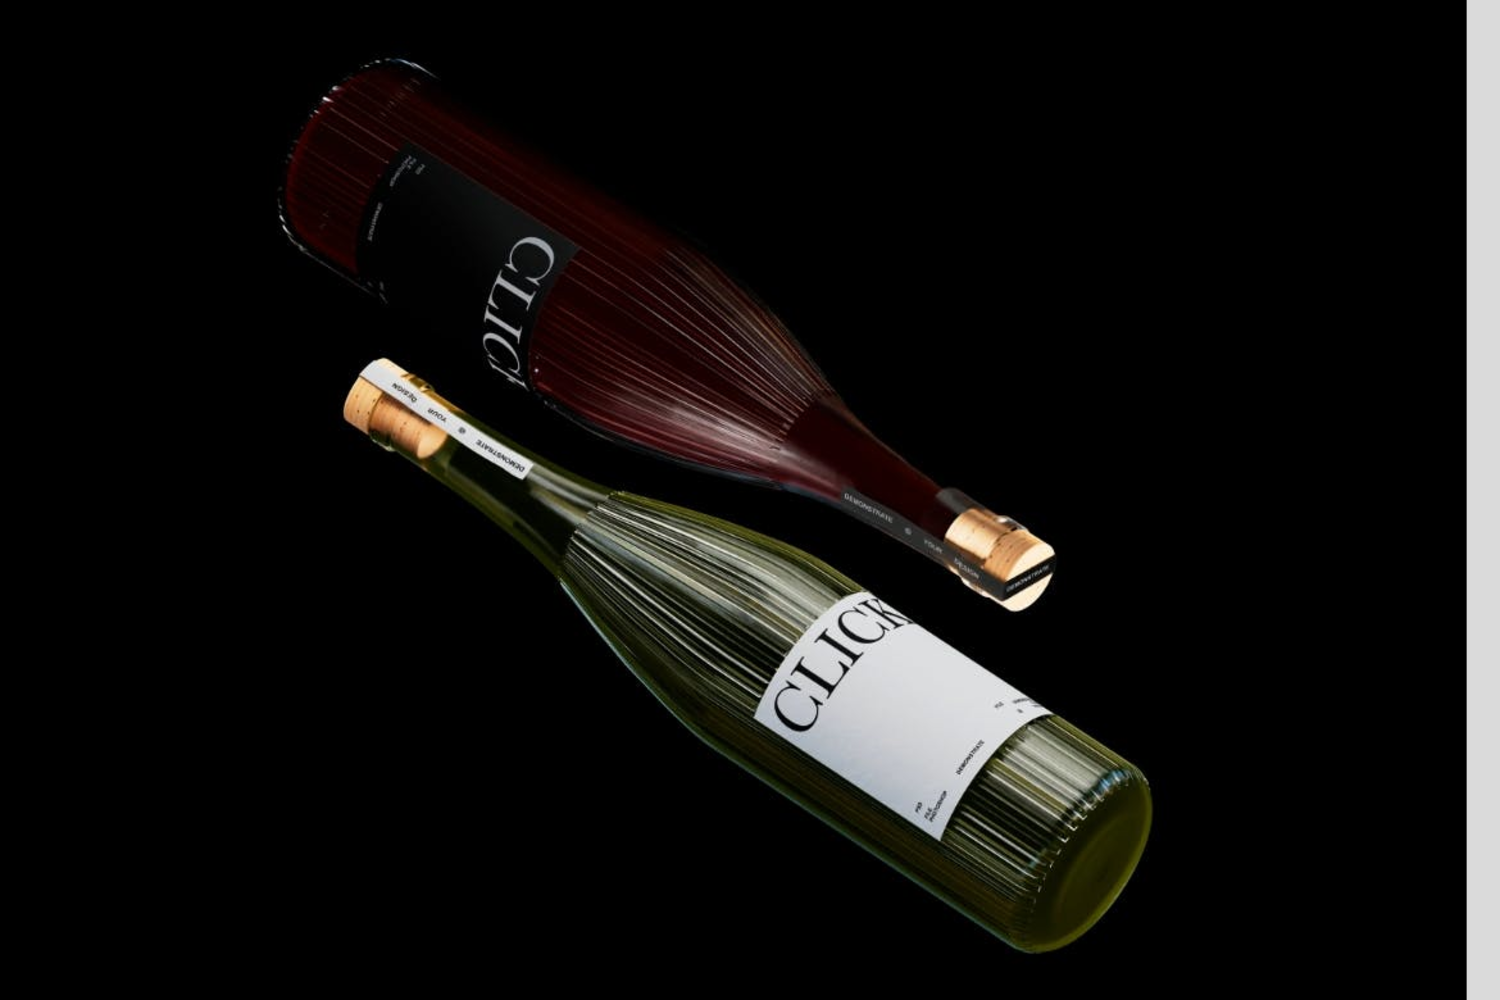 4810 6款红酒香槟啤酒洋酒高档酒瓶玻璃瓶包装设计展示PSD样机Wine Bottle Mockup Set@GOOODME.COM